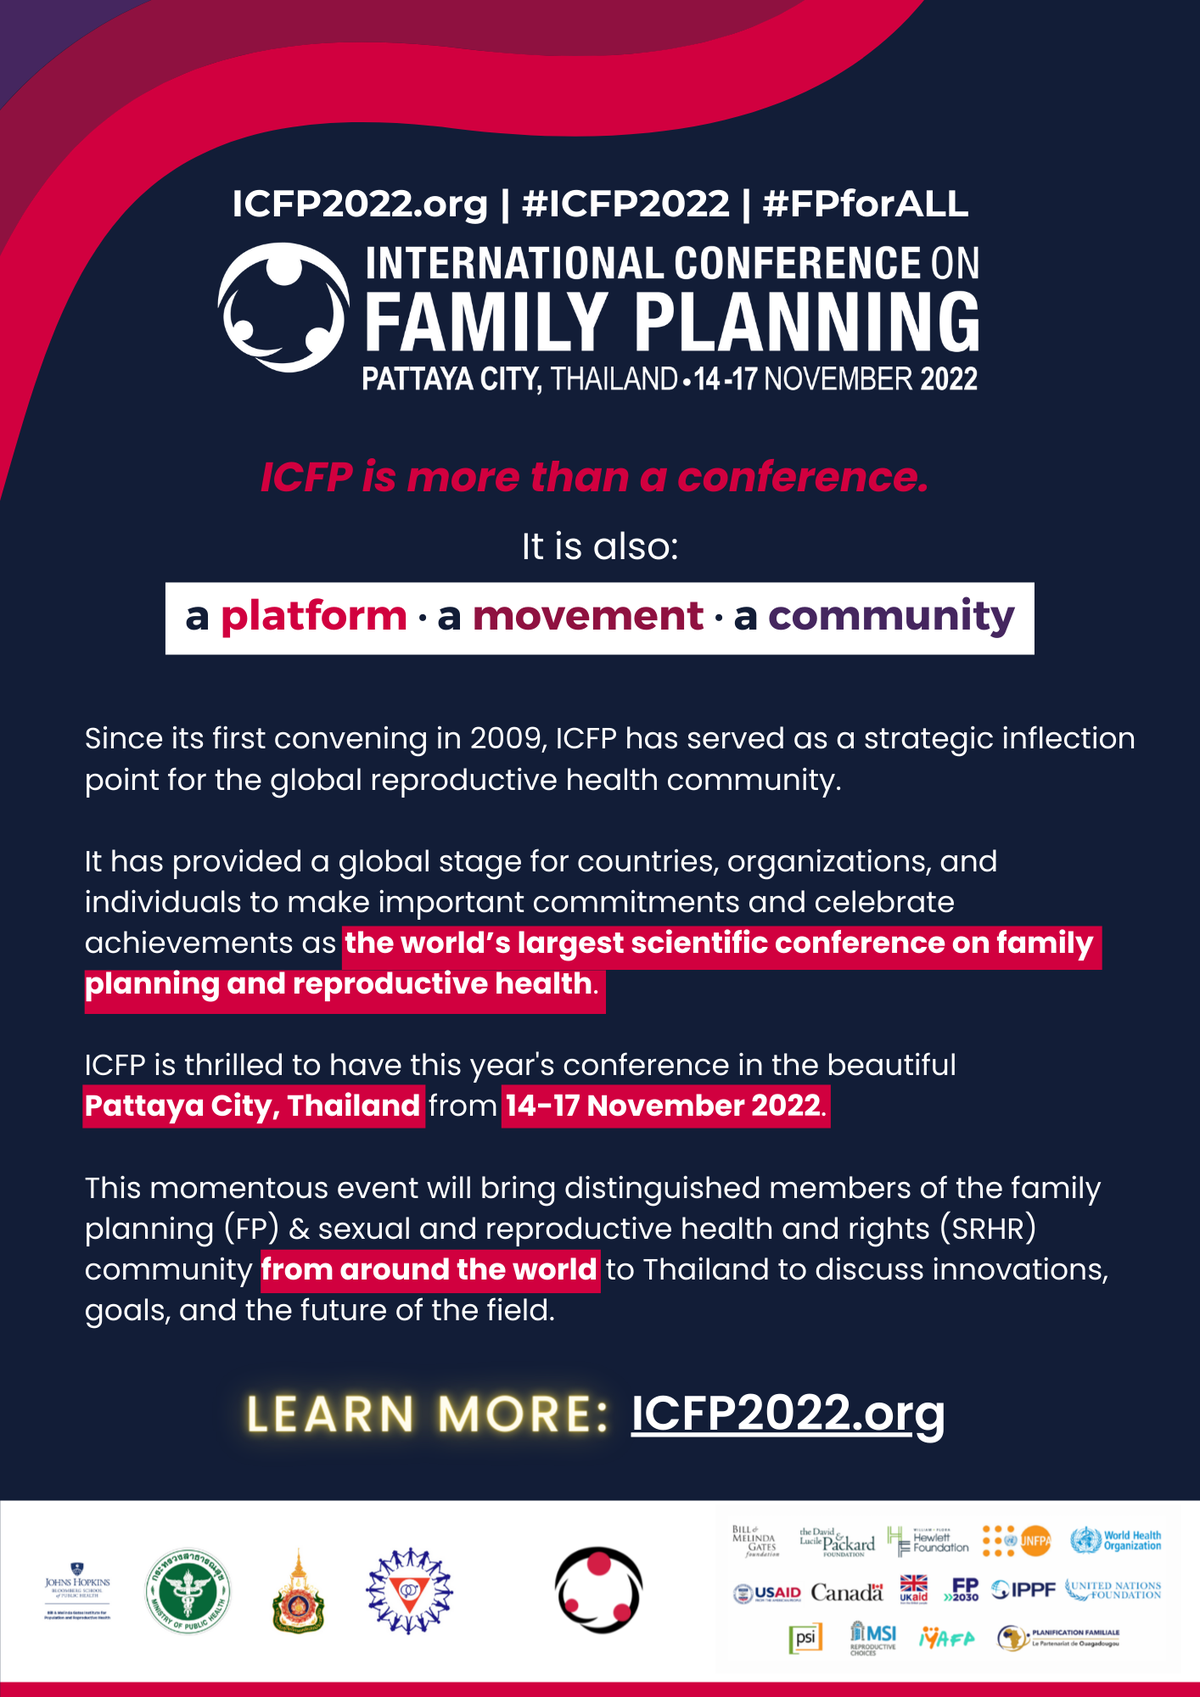 การจัดประชุมวิชาการวางแผนครอบครัวนานาชาติ ครั้งที่ 6 (6th International Conference on Family Planning 2022: ICFP 2022)